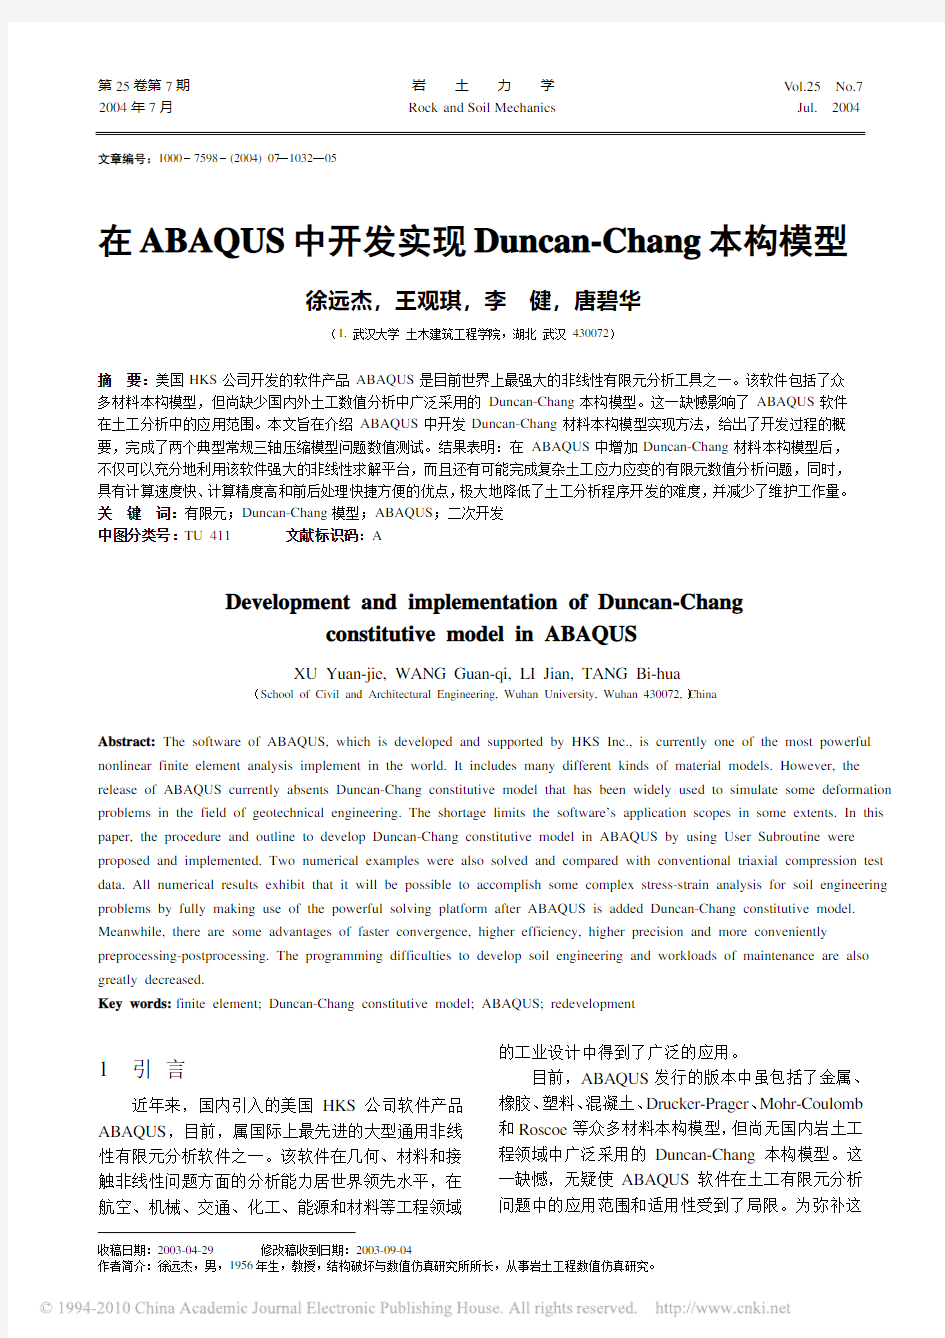 在ABAQUS中开发实现Duncan_Chang本构模型